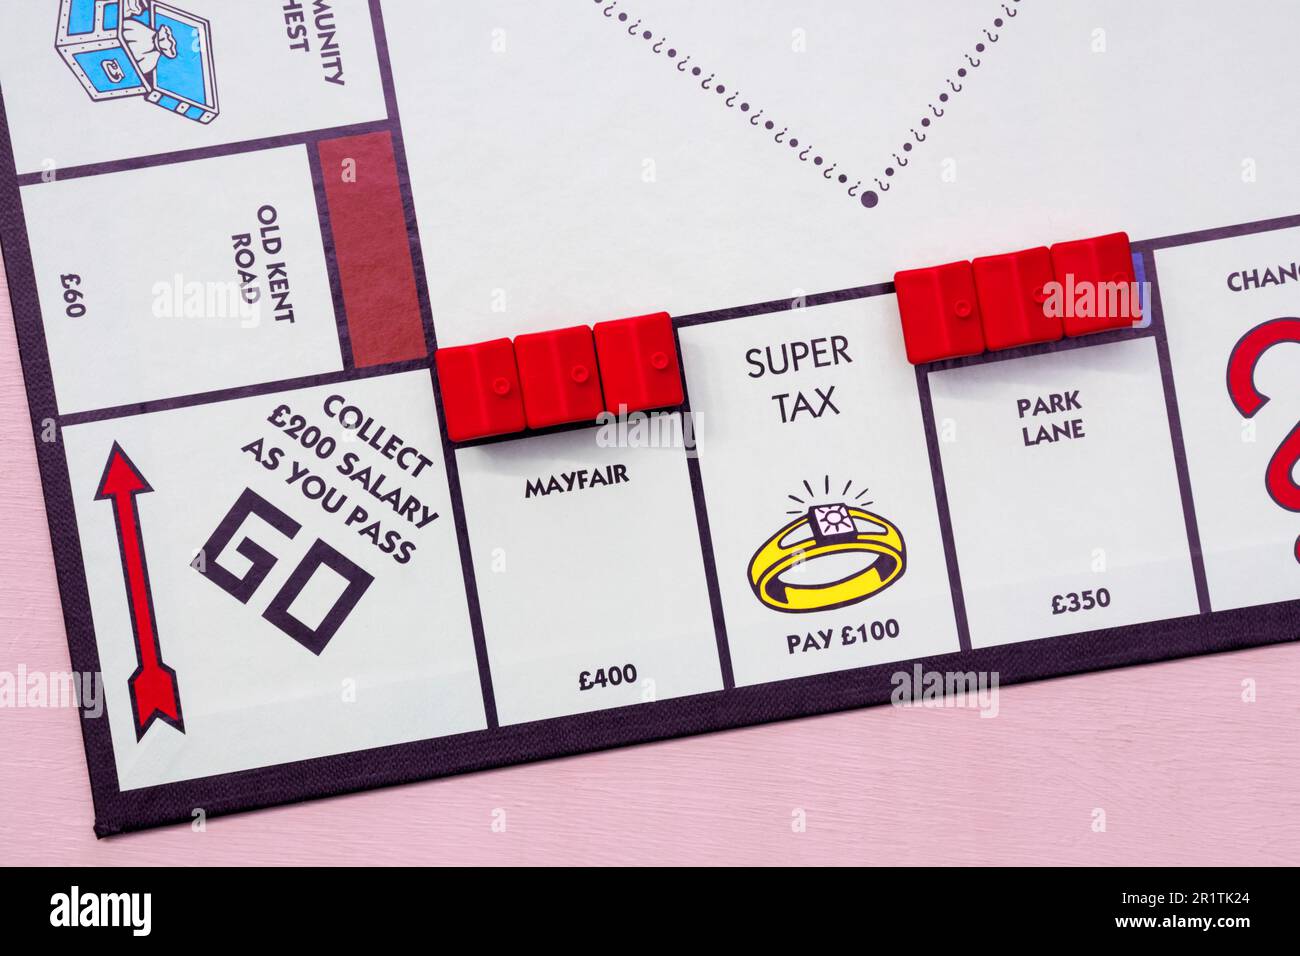 Tableau de Monopoly montrant Super Tax et les hôtels sur Mayfair et Park Lane. Banque D'Images